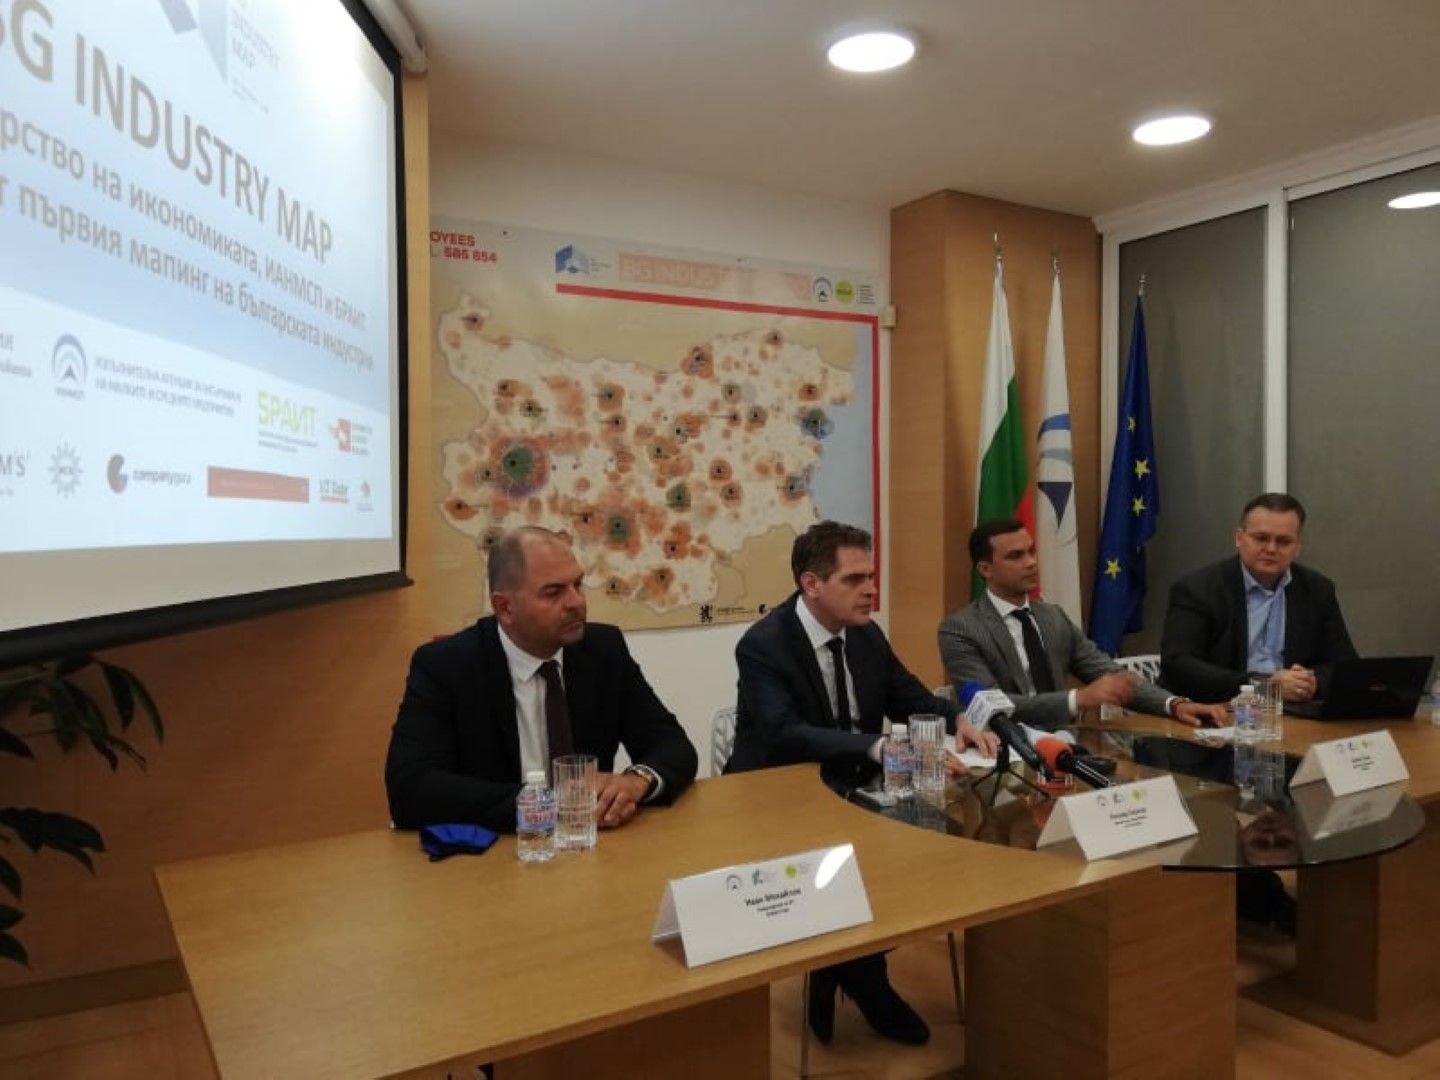 Лъчезар Борисов - министър на икономиката (вторият отляво), дава старт на картографирането на индустрията 